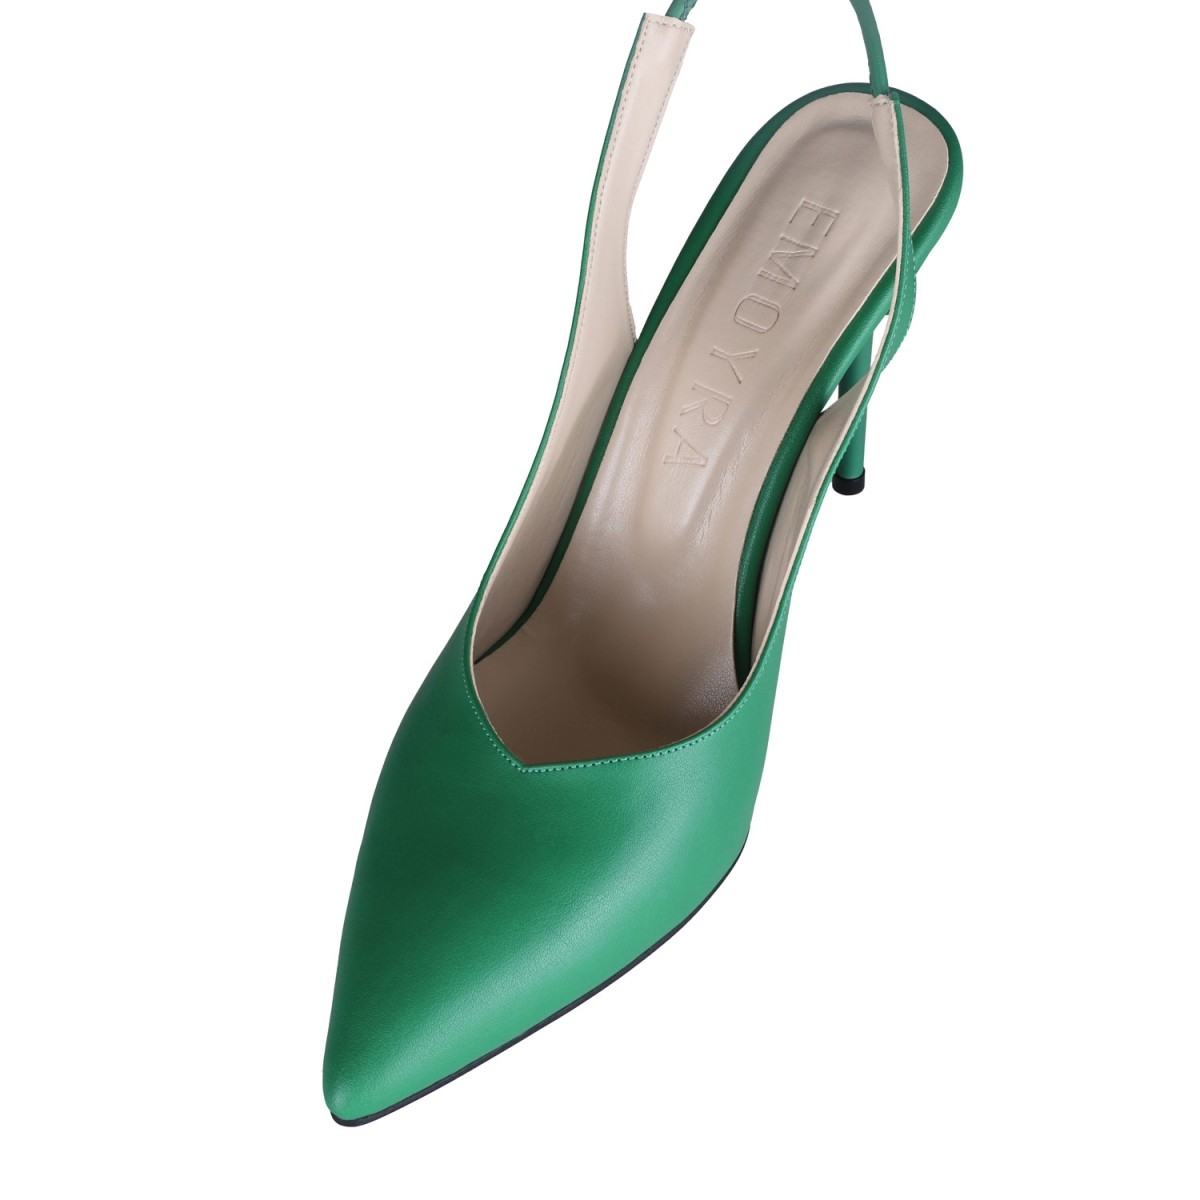 Jade İnce Yüksek Topuklu Ayakkabı Stiletto Yeşil